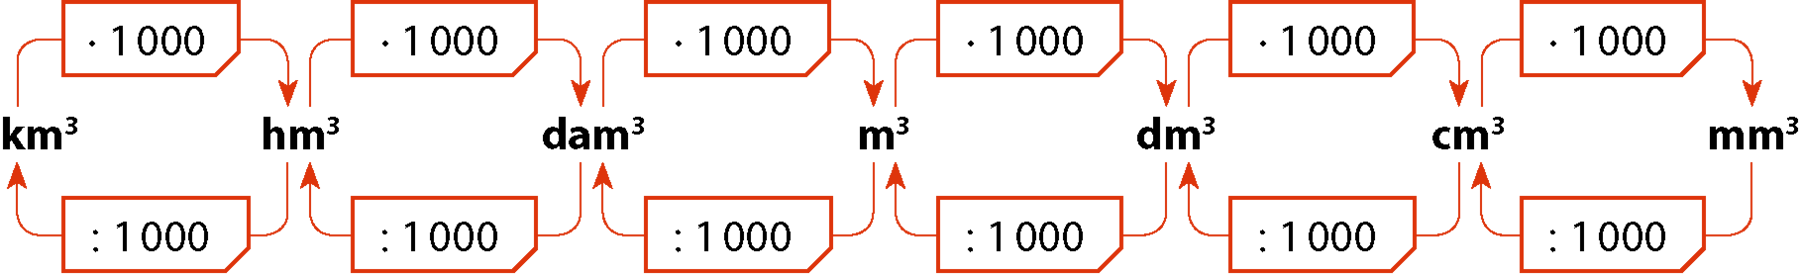 Esquema. Indicação da relação entre as unidades de medida de volume. Da esquerda para a direita indicação das unidades de medida: quilômetro cúbico, hectômetro cúbico, decâmetro cúbico, metro cúbico, decímetro cúbico, centímetro cúbico e milímetro cúbico. Indicações de multiplicações e divisões por mil relacionando duas a duas as unidades de medida.